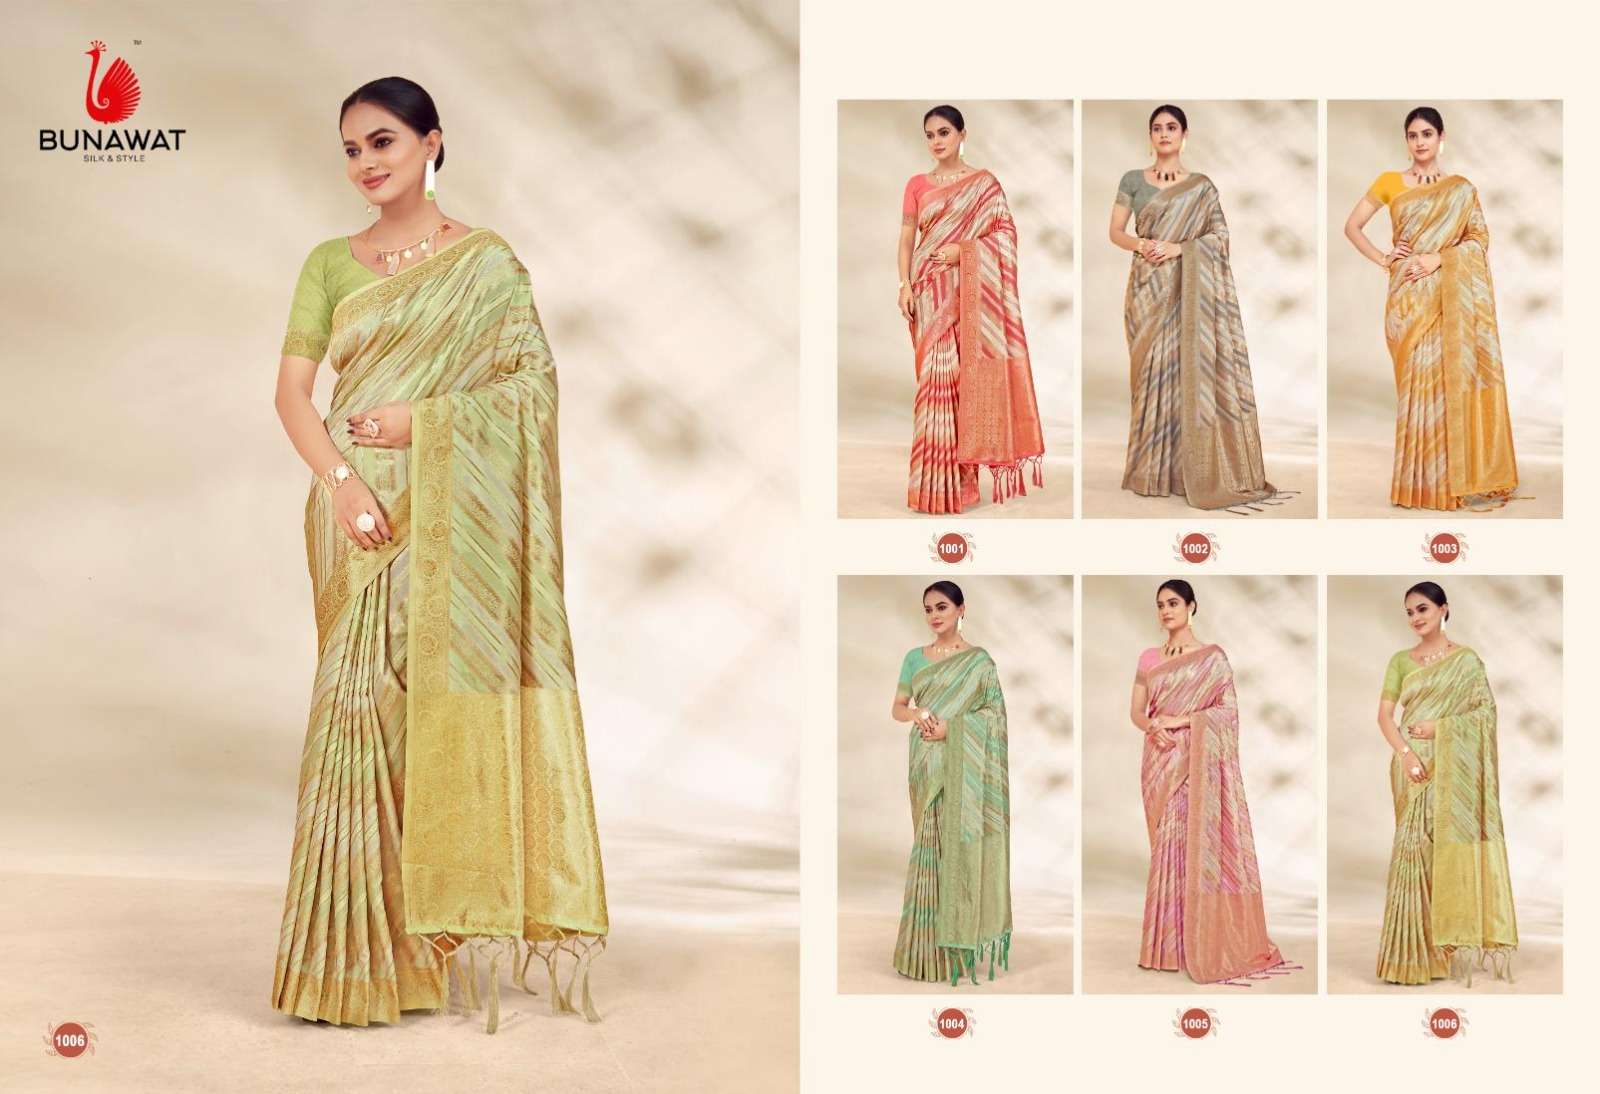 BUNAWAT Alia Silk Banarasi Silk Saree Wholesale catalog